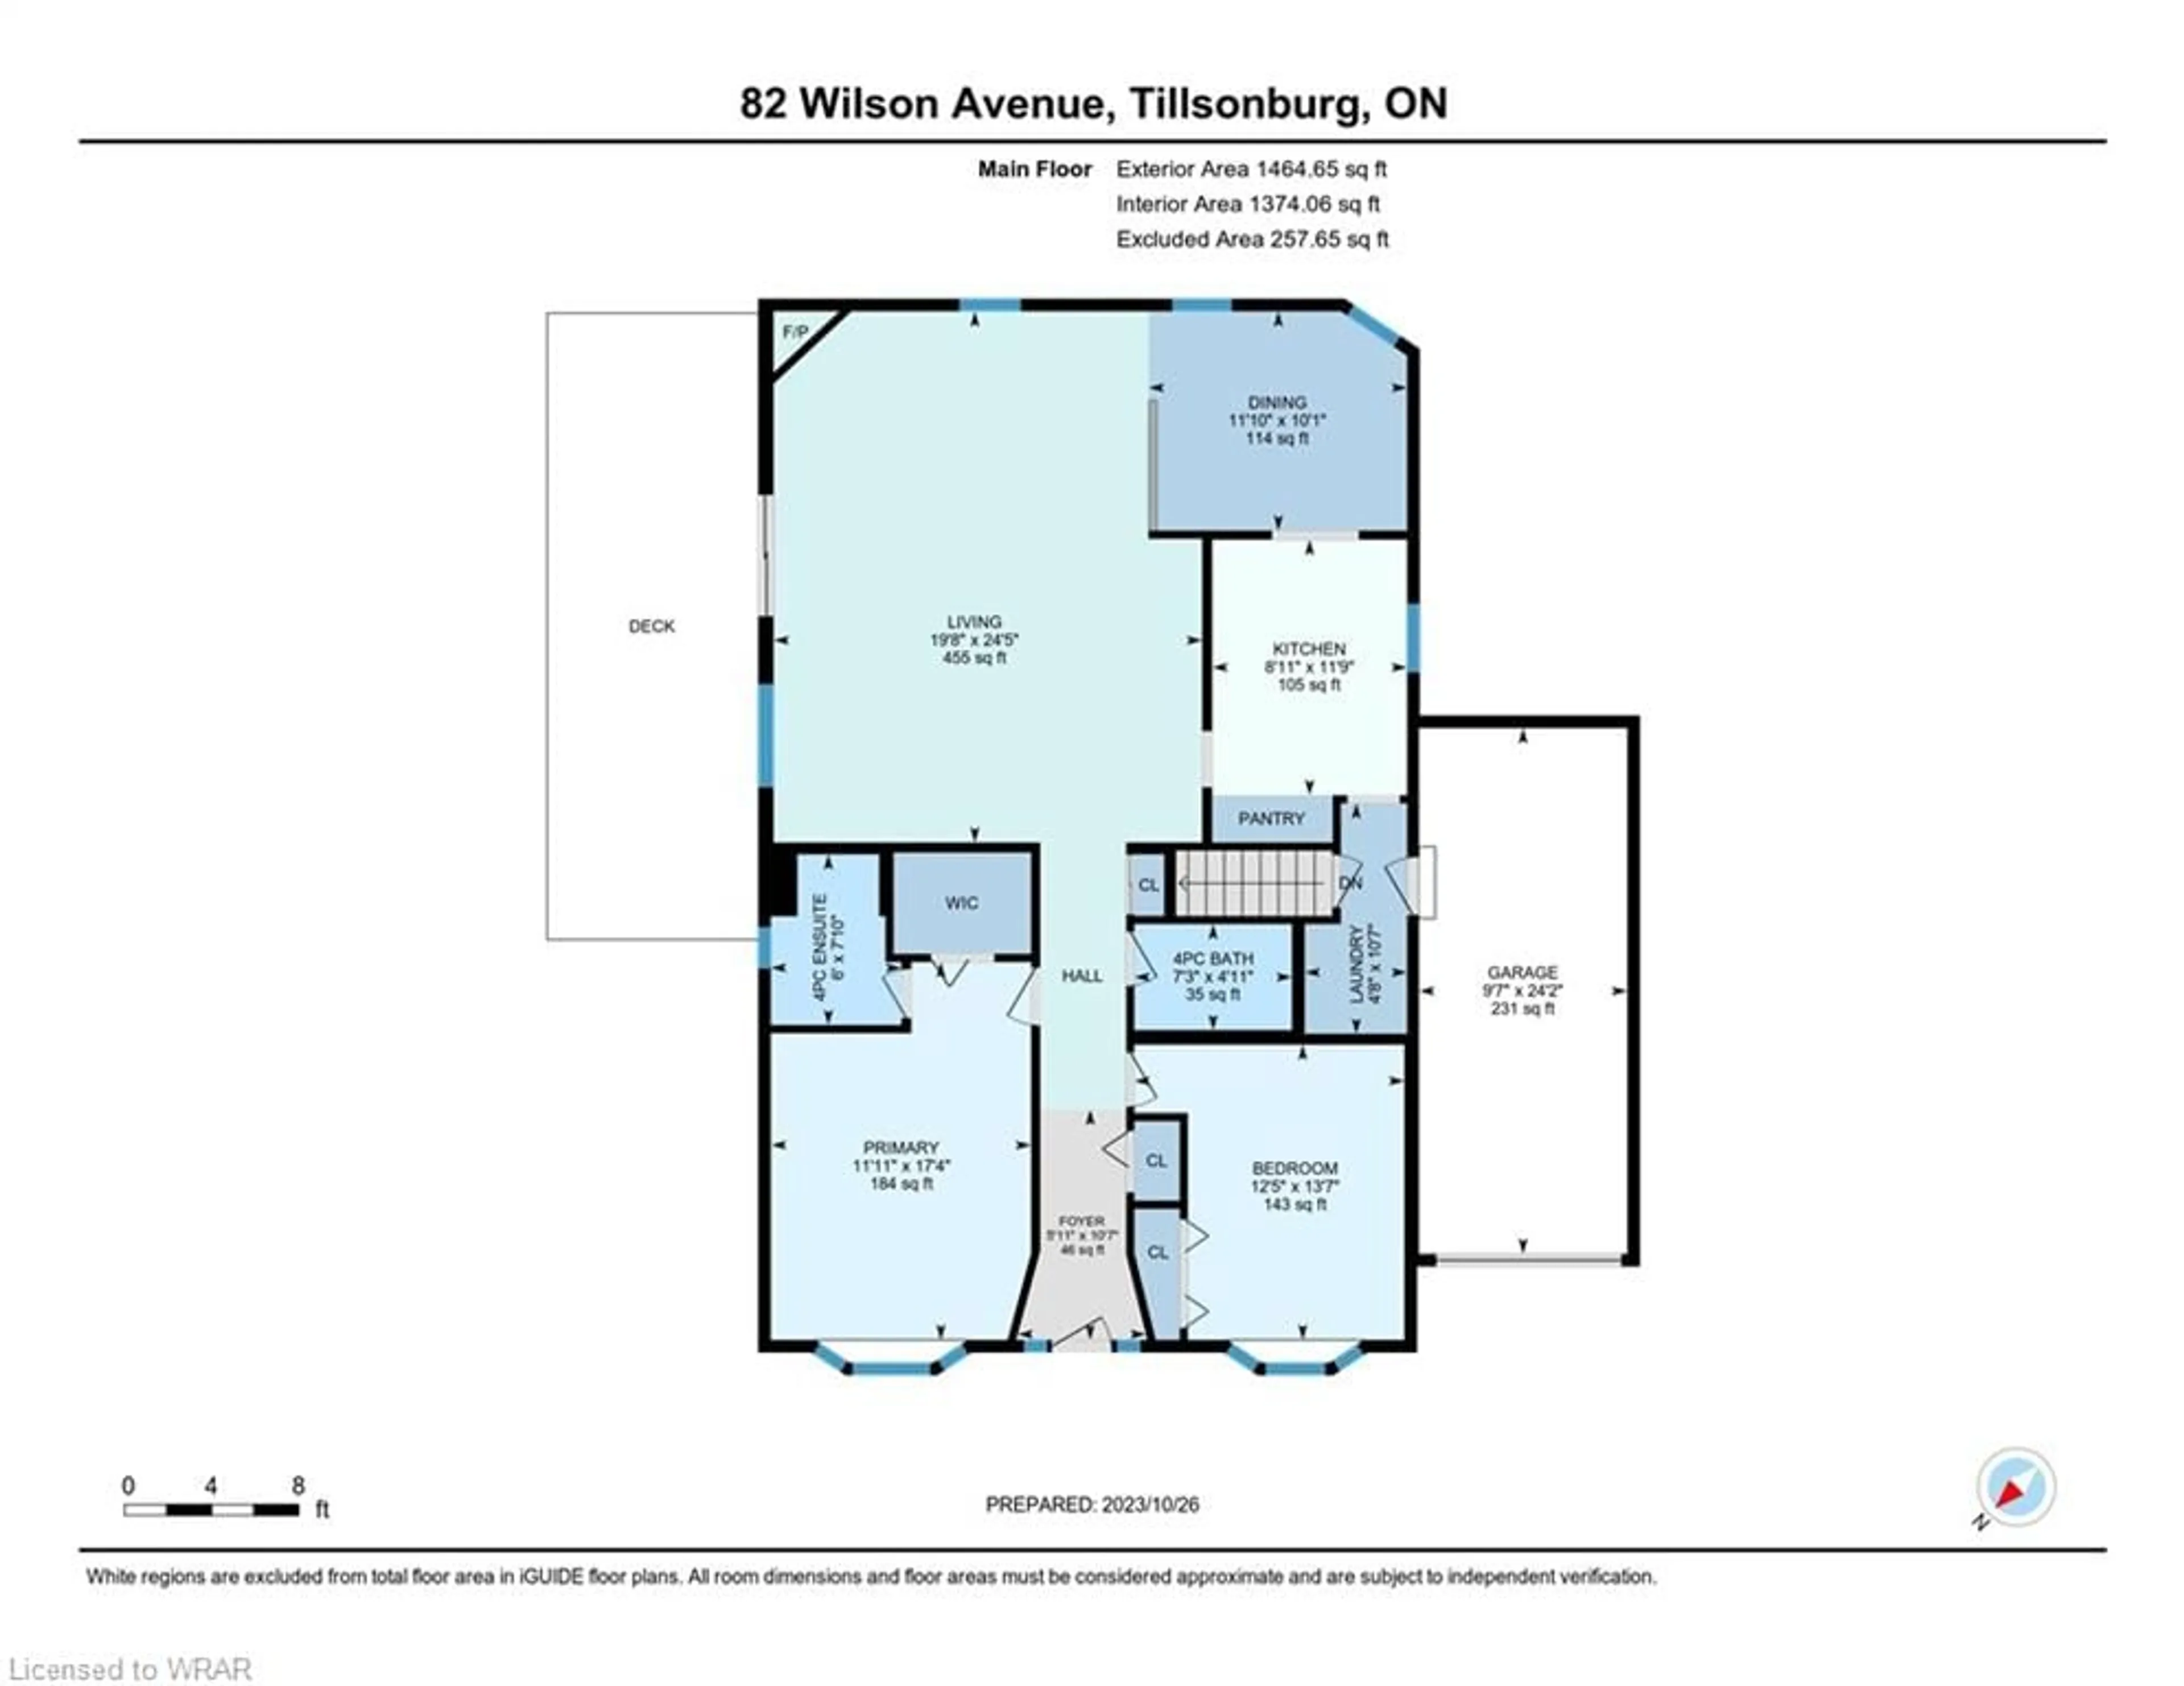 Floor plan for 82 Wilson Ave, Tillsonburg Ontario N4G 5L8